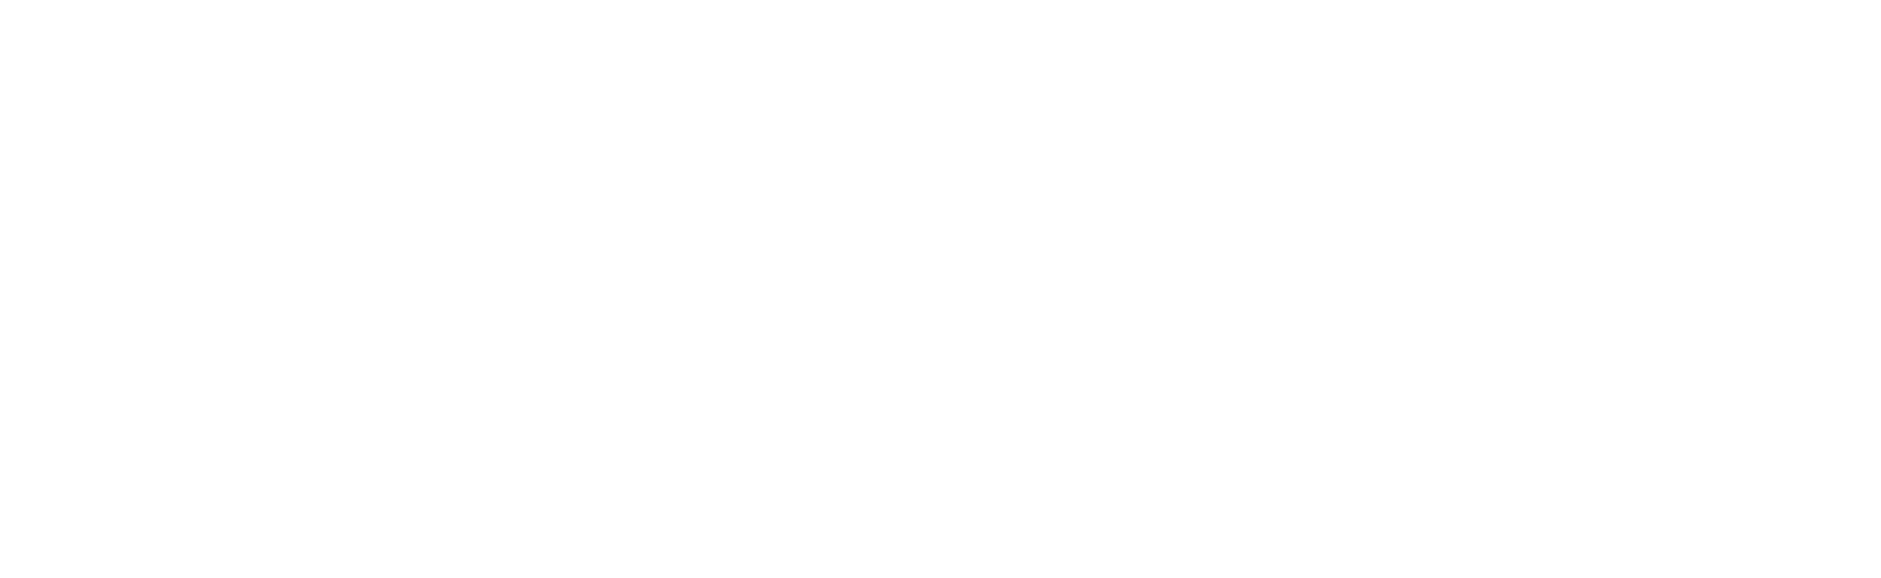 [Moota] Logo - White